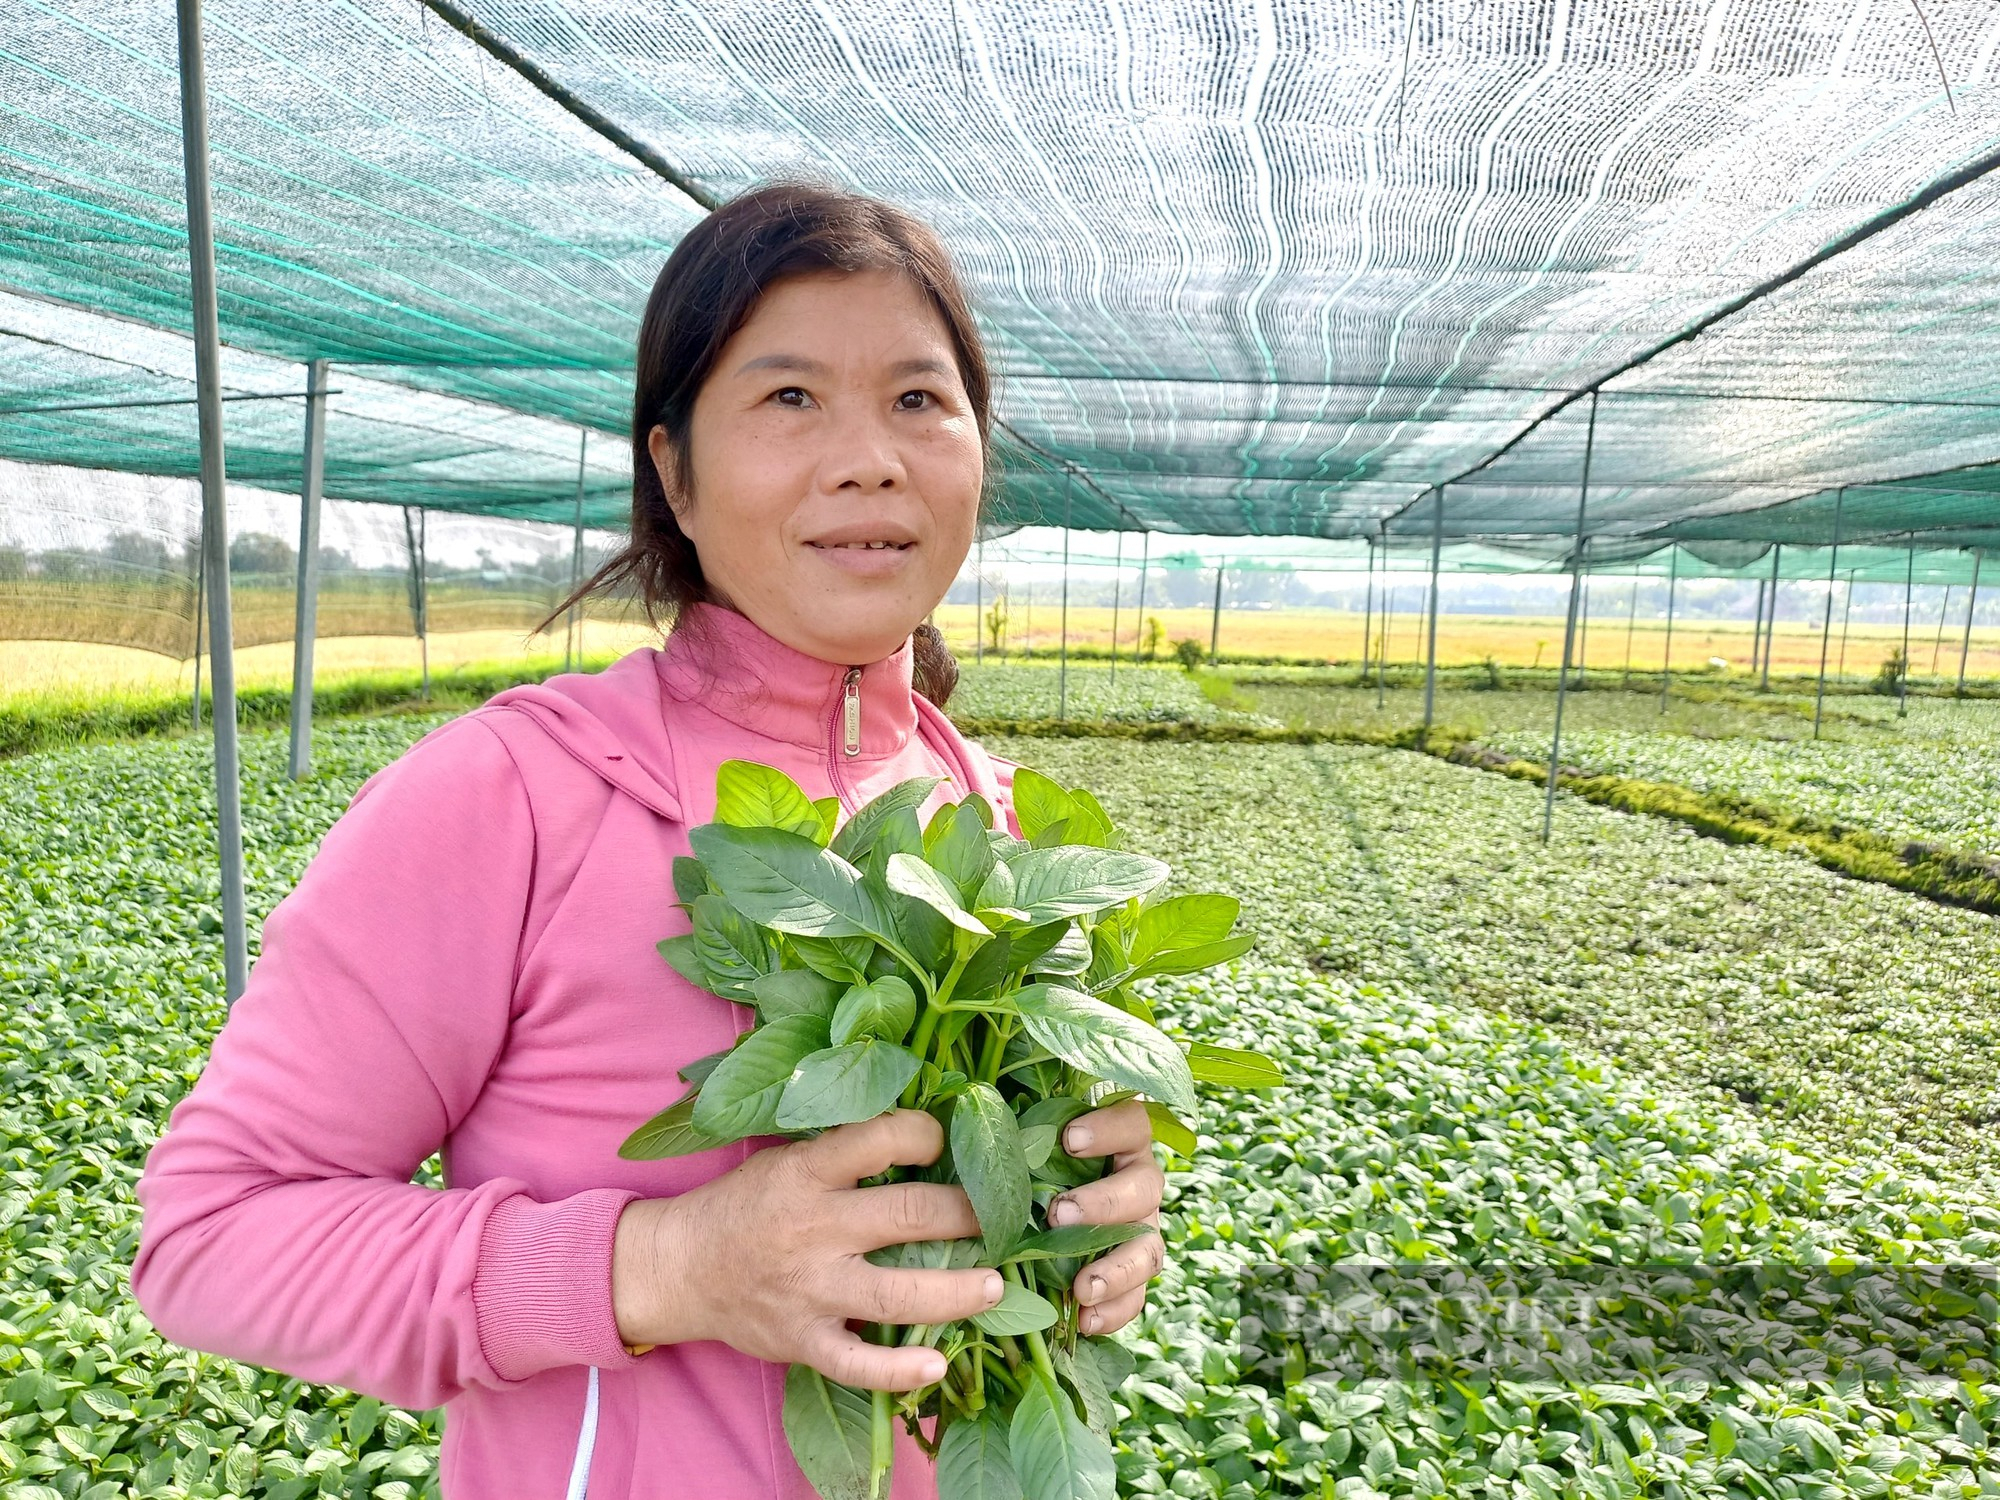 Trồng loại rau hoang dã 1 lần hái bán cả đời, chị nông dân Sài Gòn túc tắc xây nhà lầu - Ảnh 1.